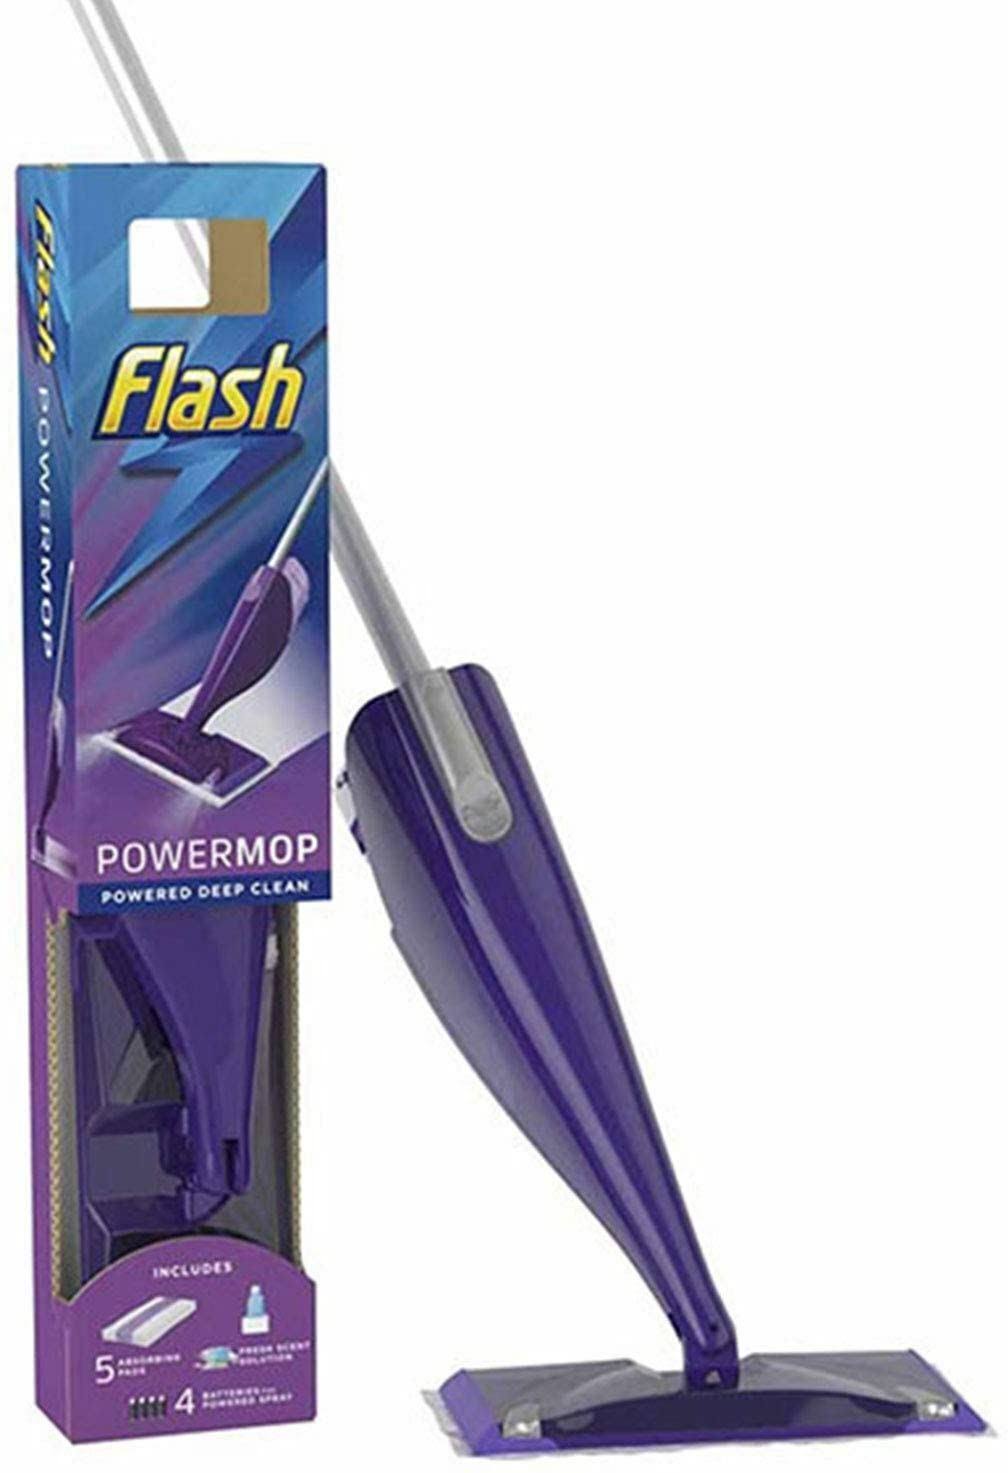 Flash PowerMop Starter Kit